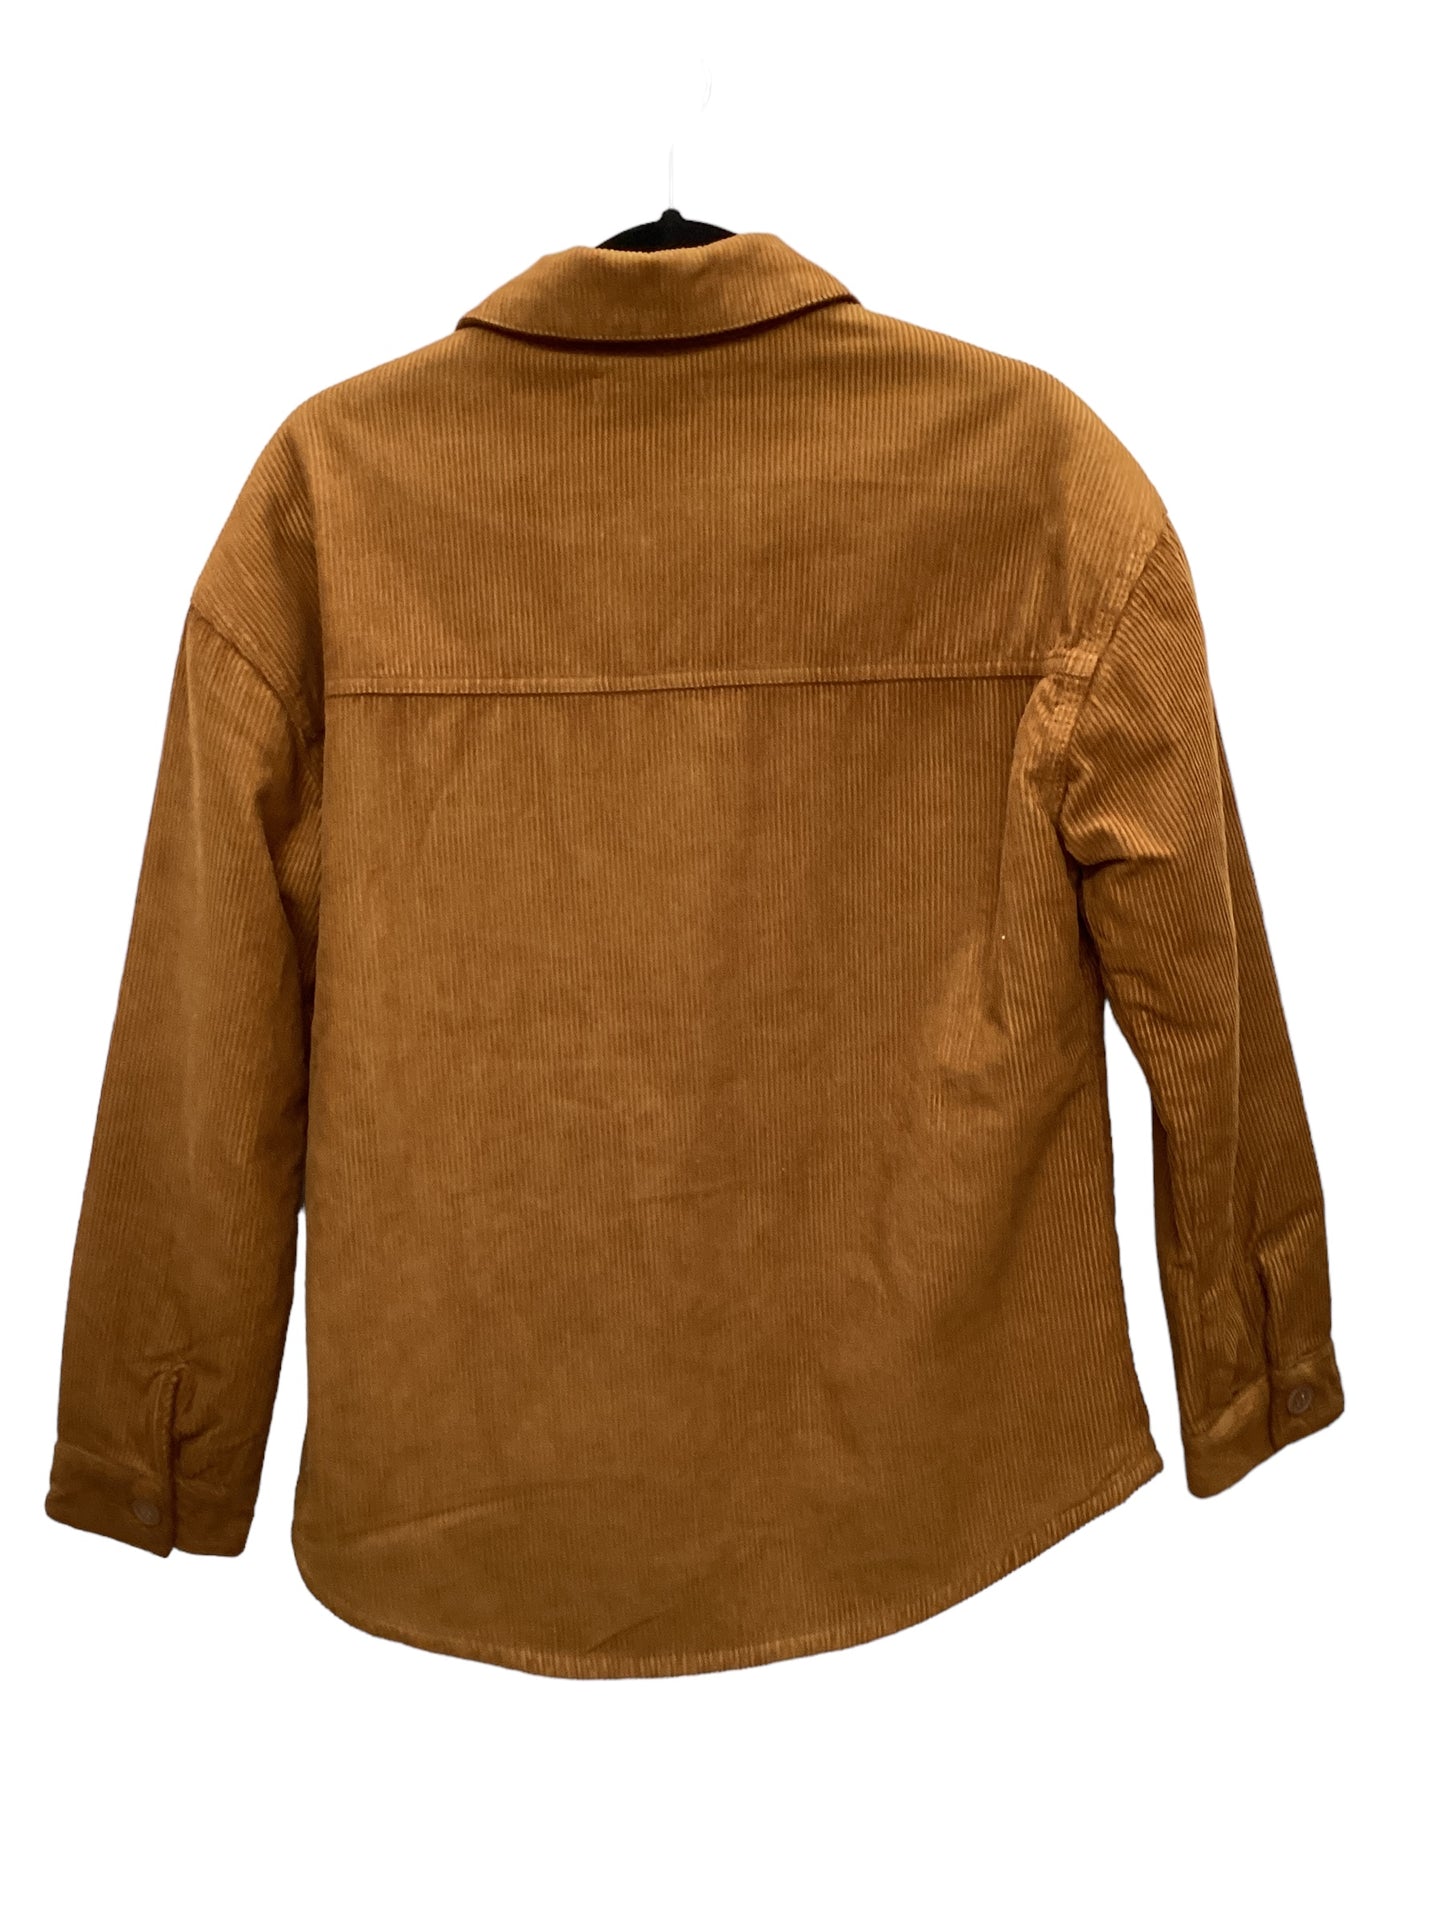 Jacket Shirt By Pacsun  Size: Xs